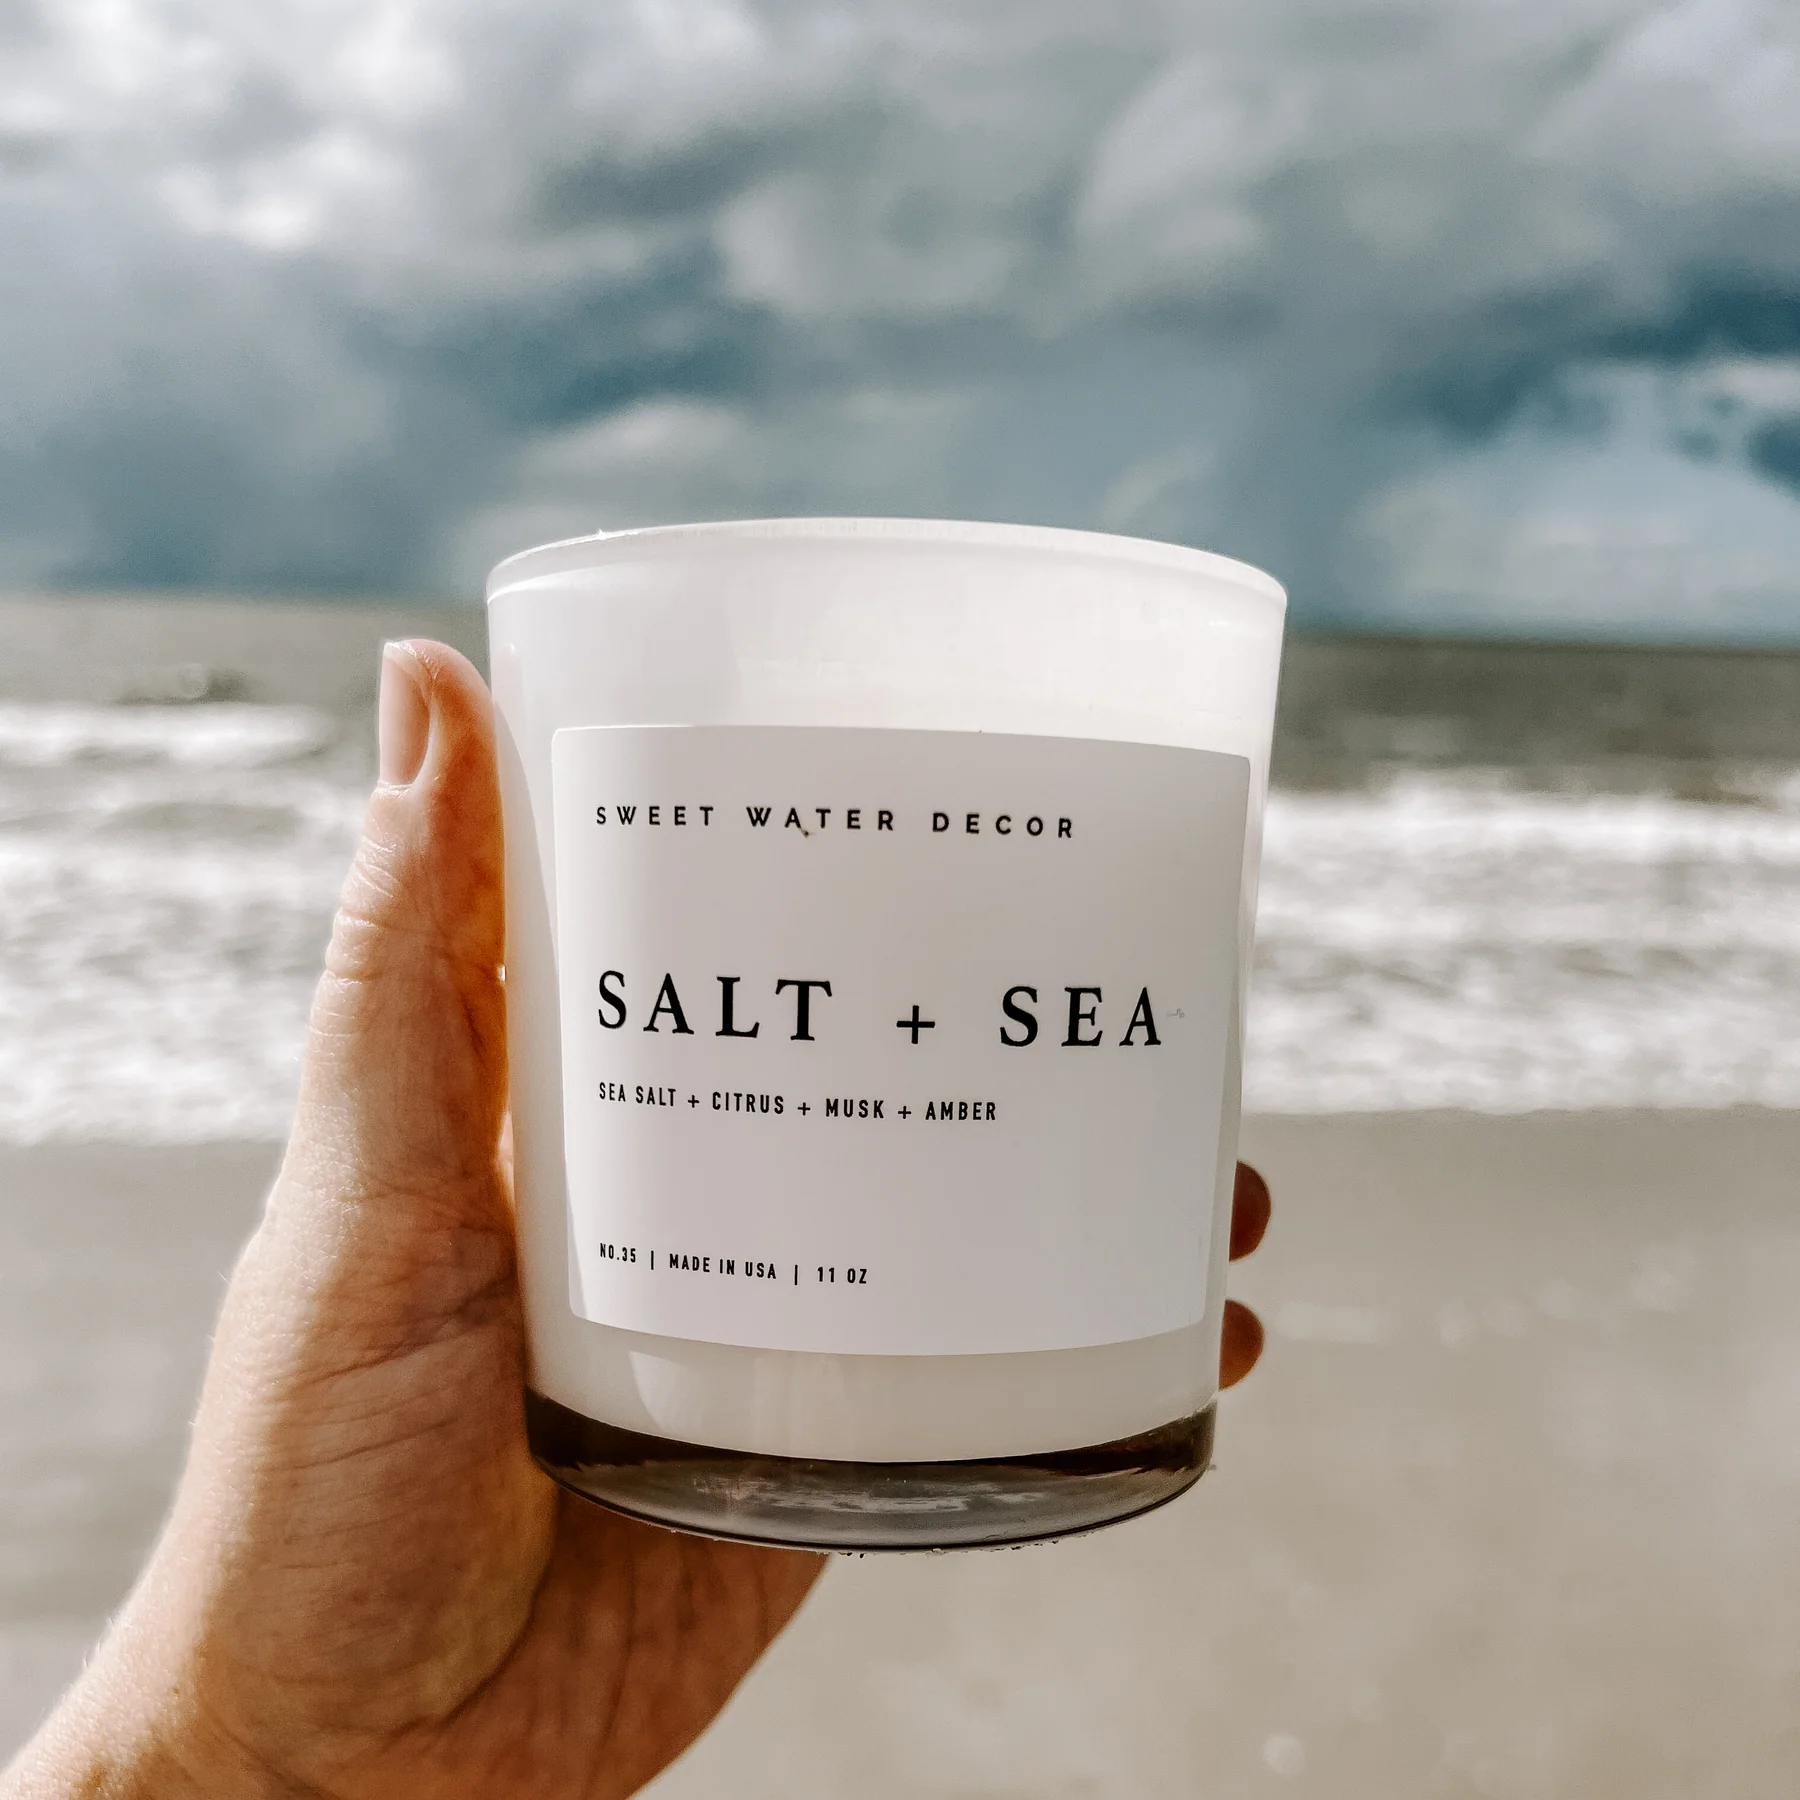 SALT + SEA by SWEET WATER DECOR